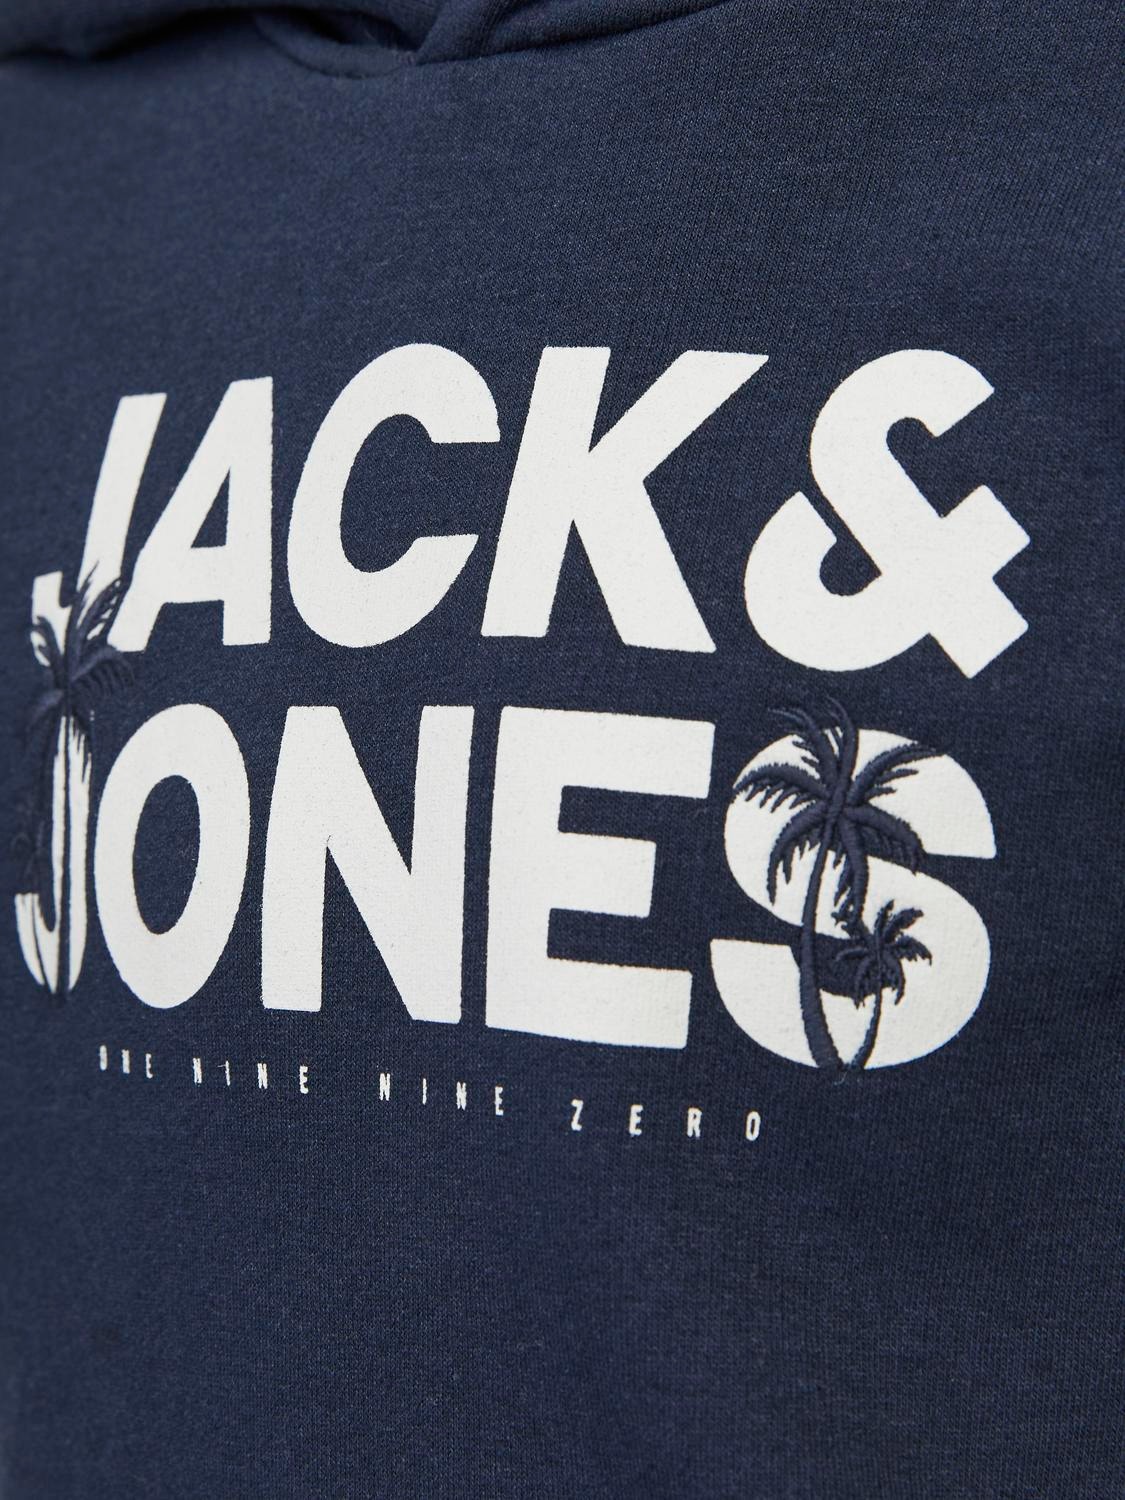 Jack & Jones Trükitud Kapuutsiga pusa Junior -Navy Blazer - 12249676